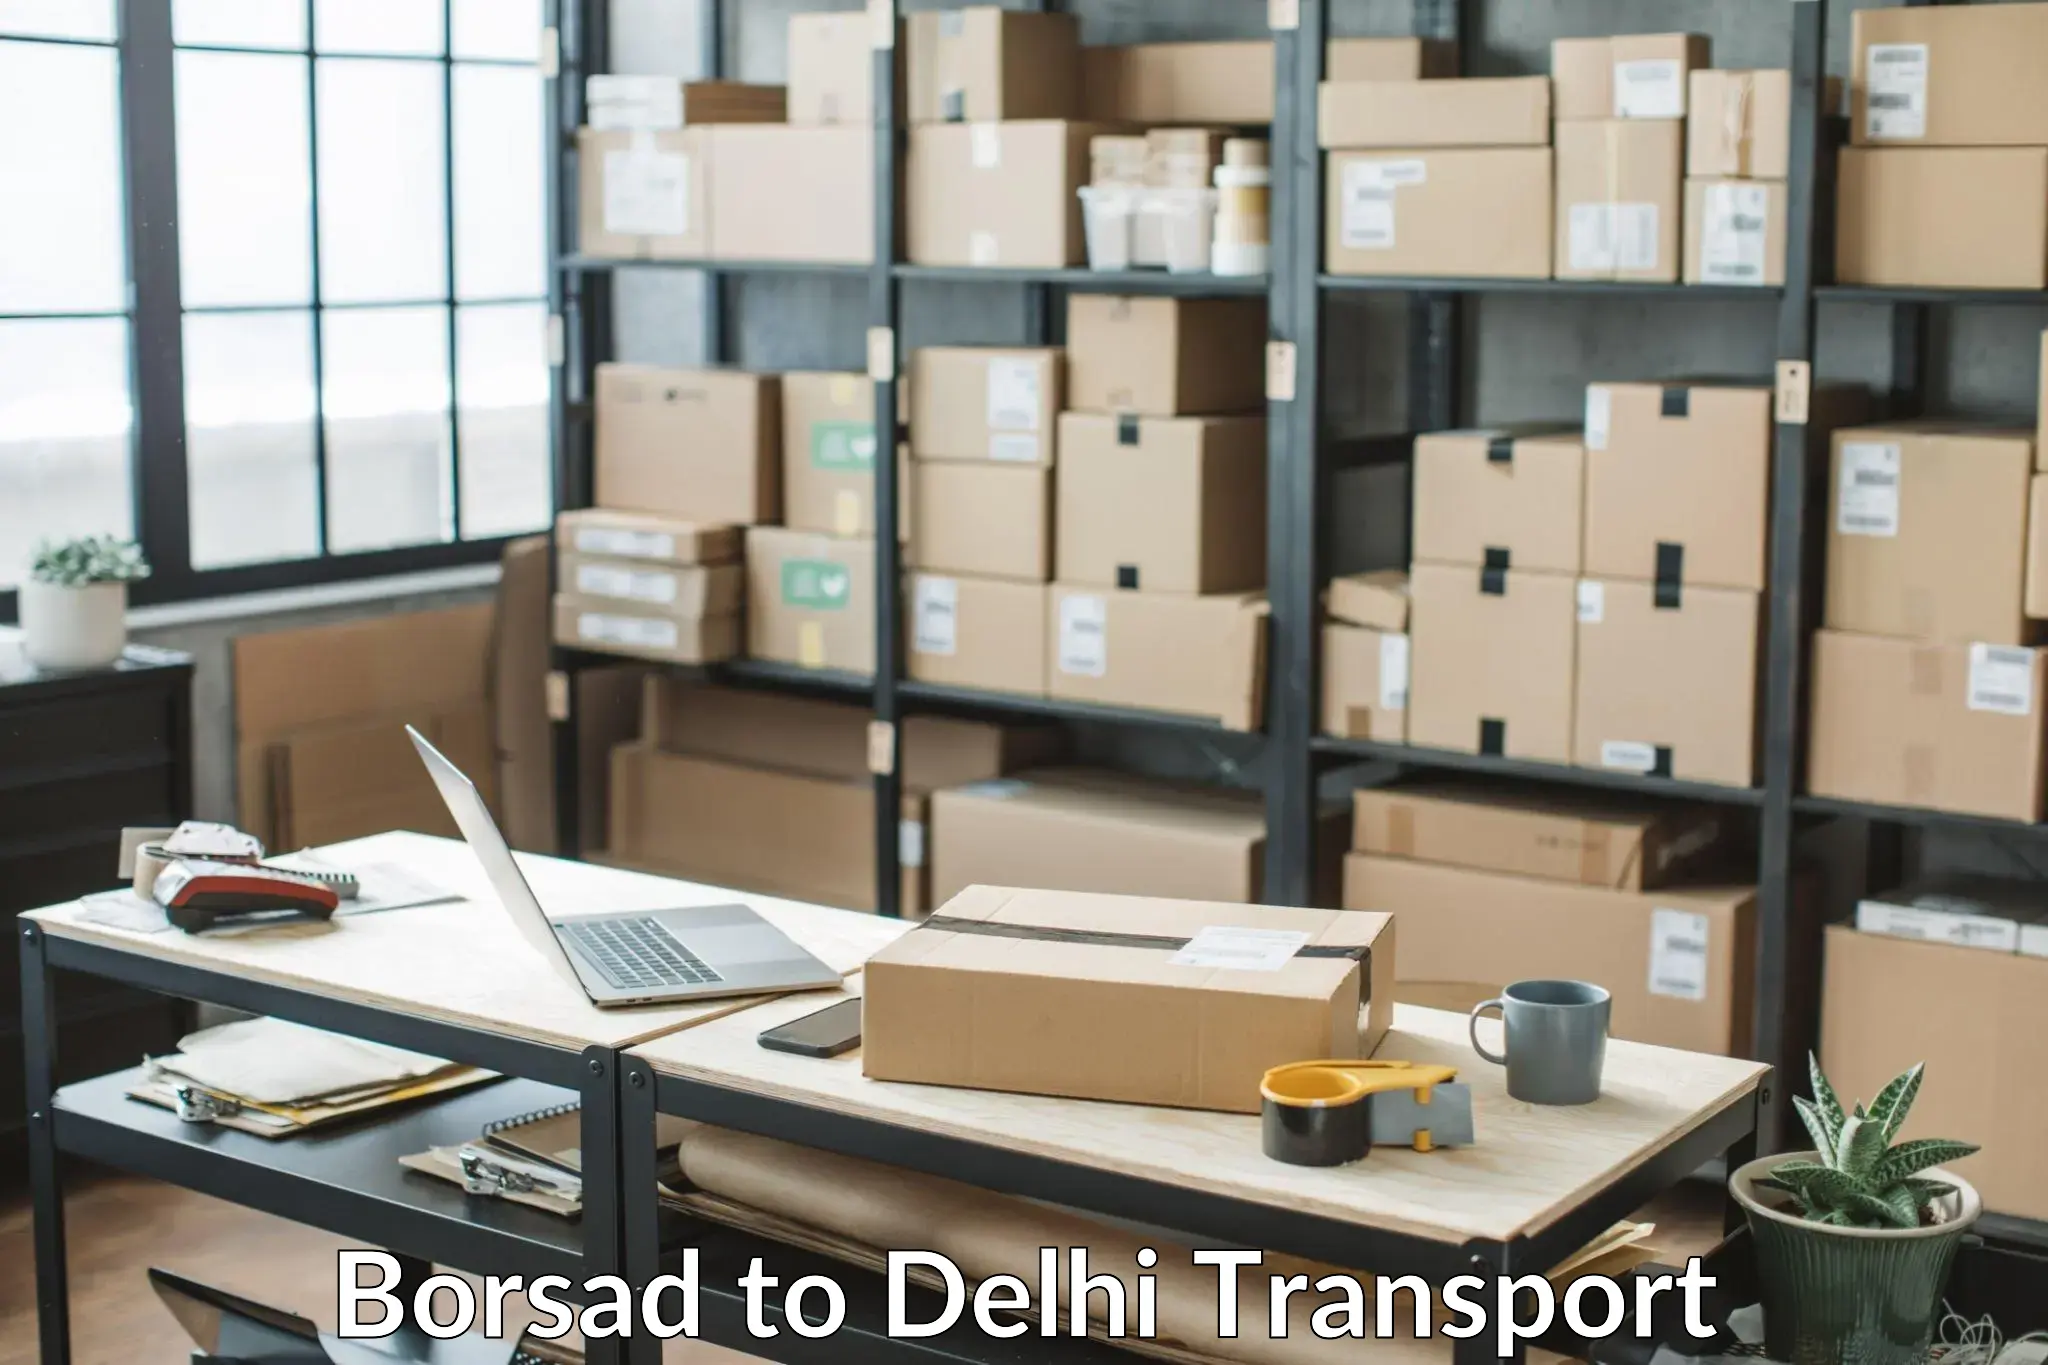 Express transport services Borsad to IIT Delhi